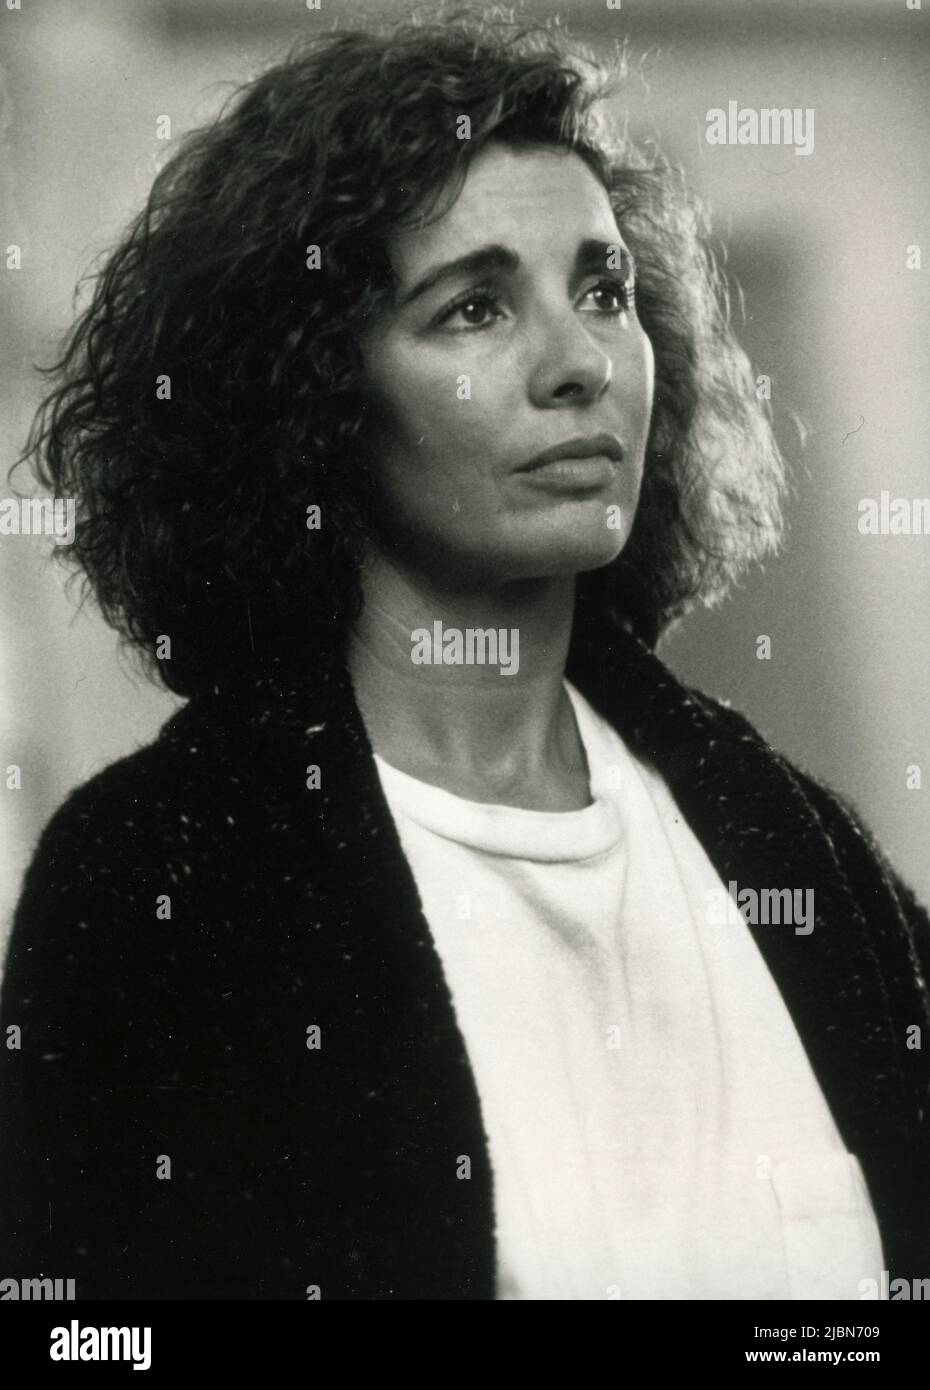 La actriz estadounidense Anne Archer en la película Narrow Margin, EE.UU. 1990 Foto de stock